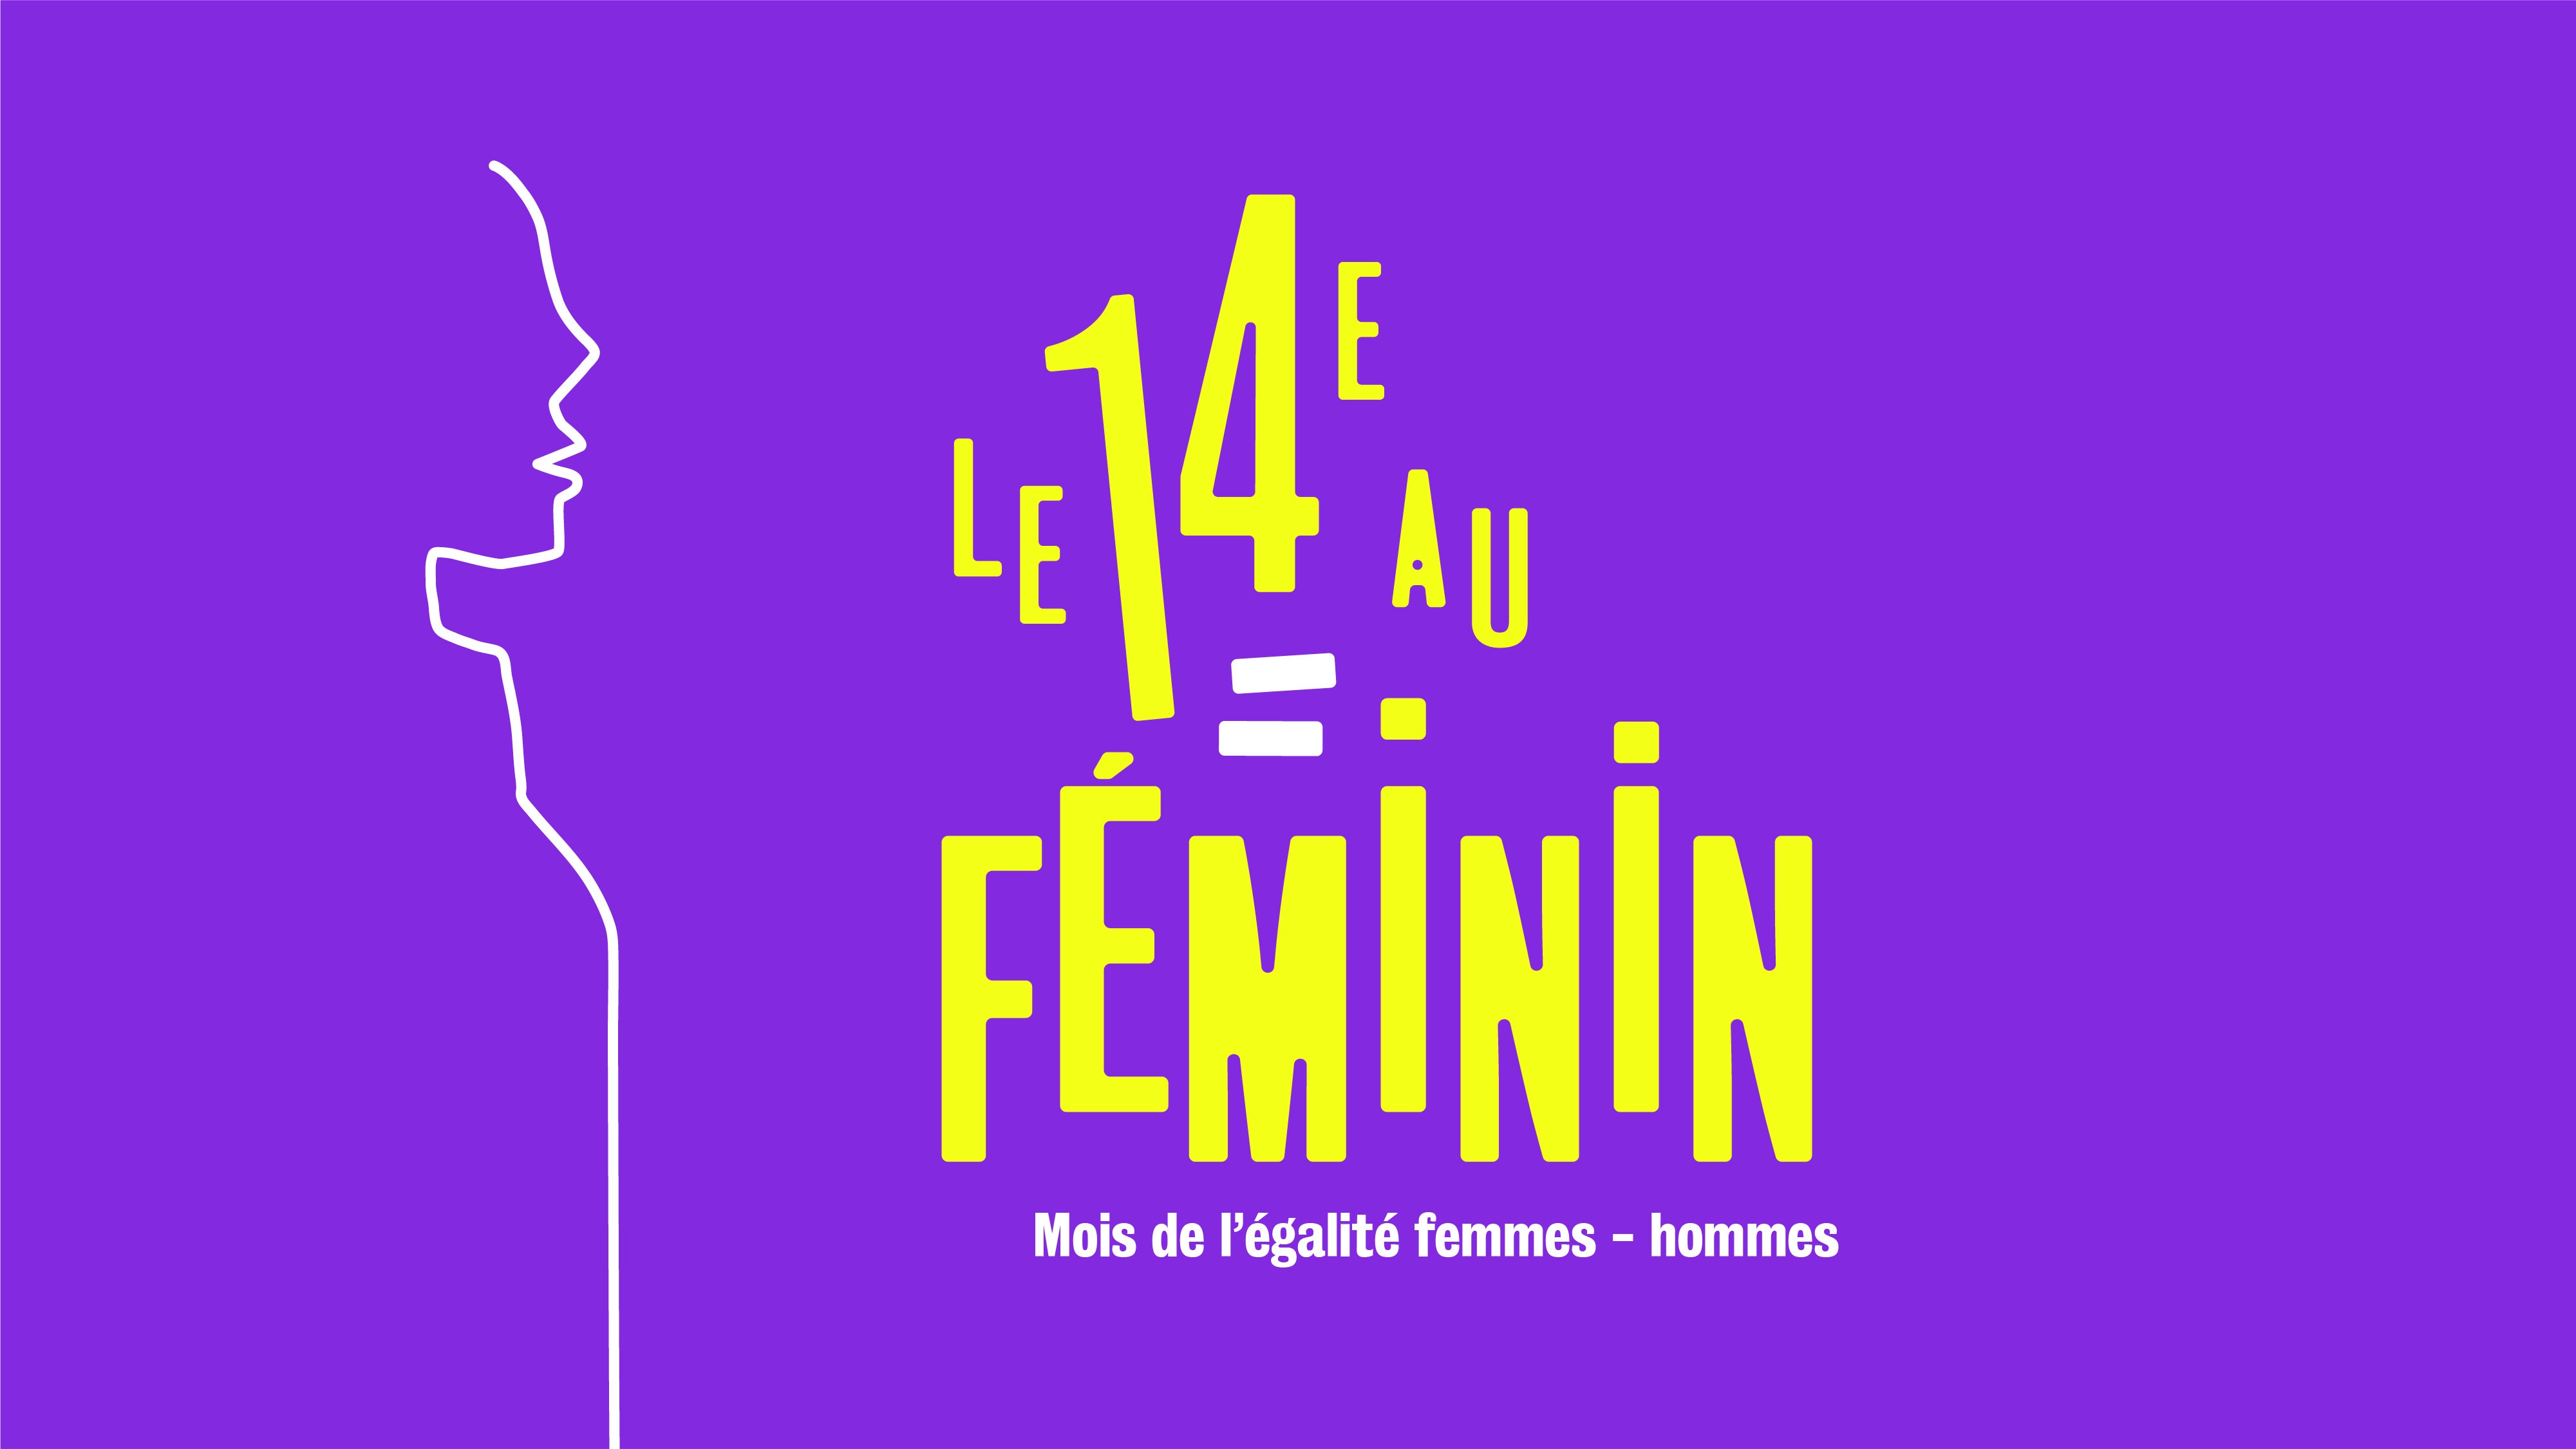 Visuel du 14e au féminin, en mars dans tout l'arrondissement